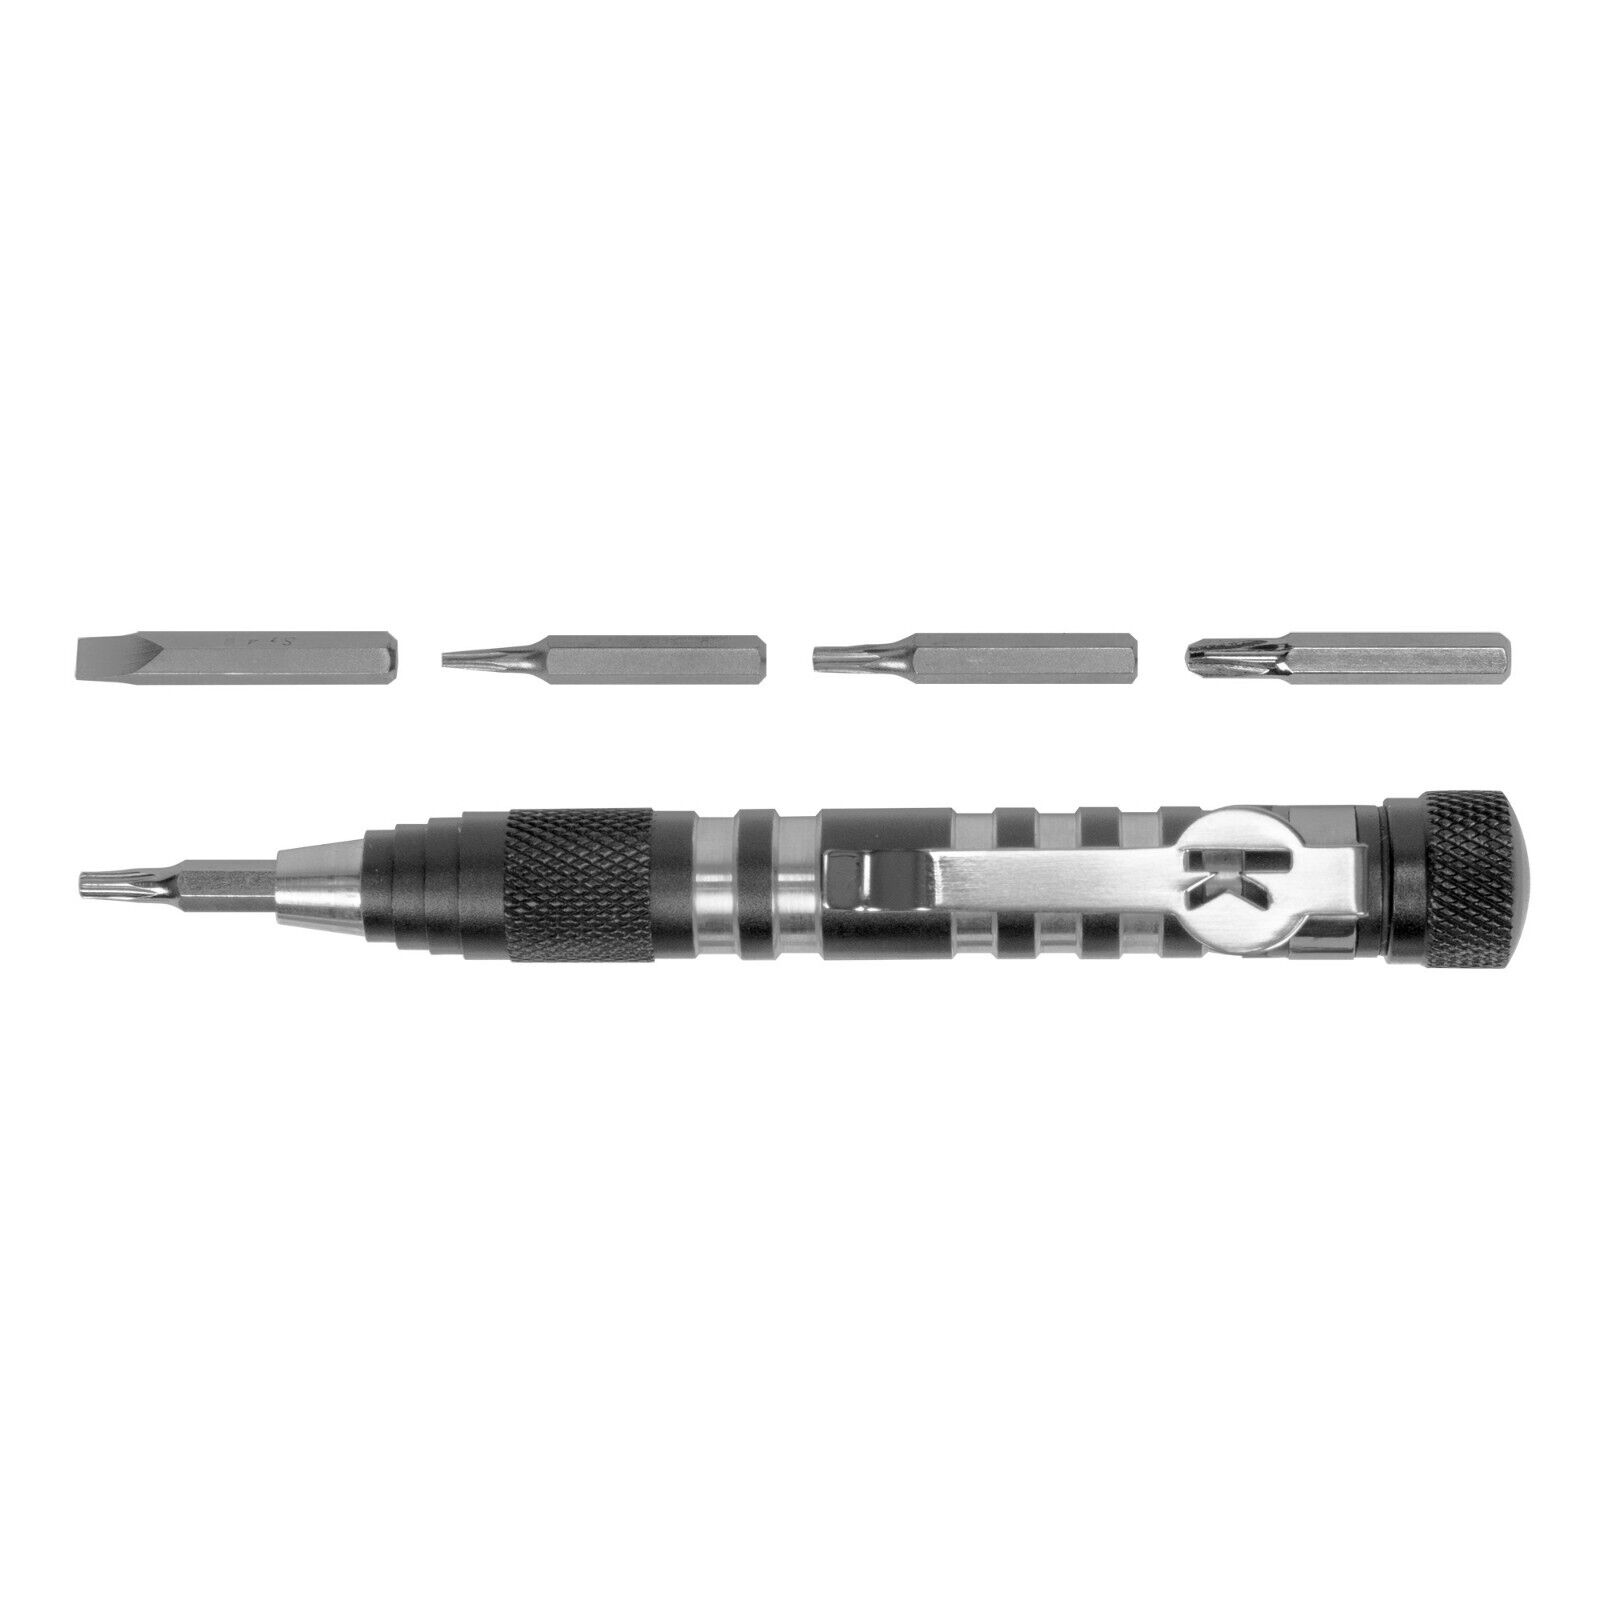 KERSHAW TX-Tool TORX Bit Set fits most Knives TXTOOL TUNE-UP & REPAIR T-tool Kit